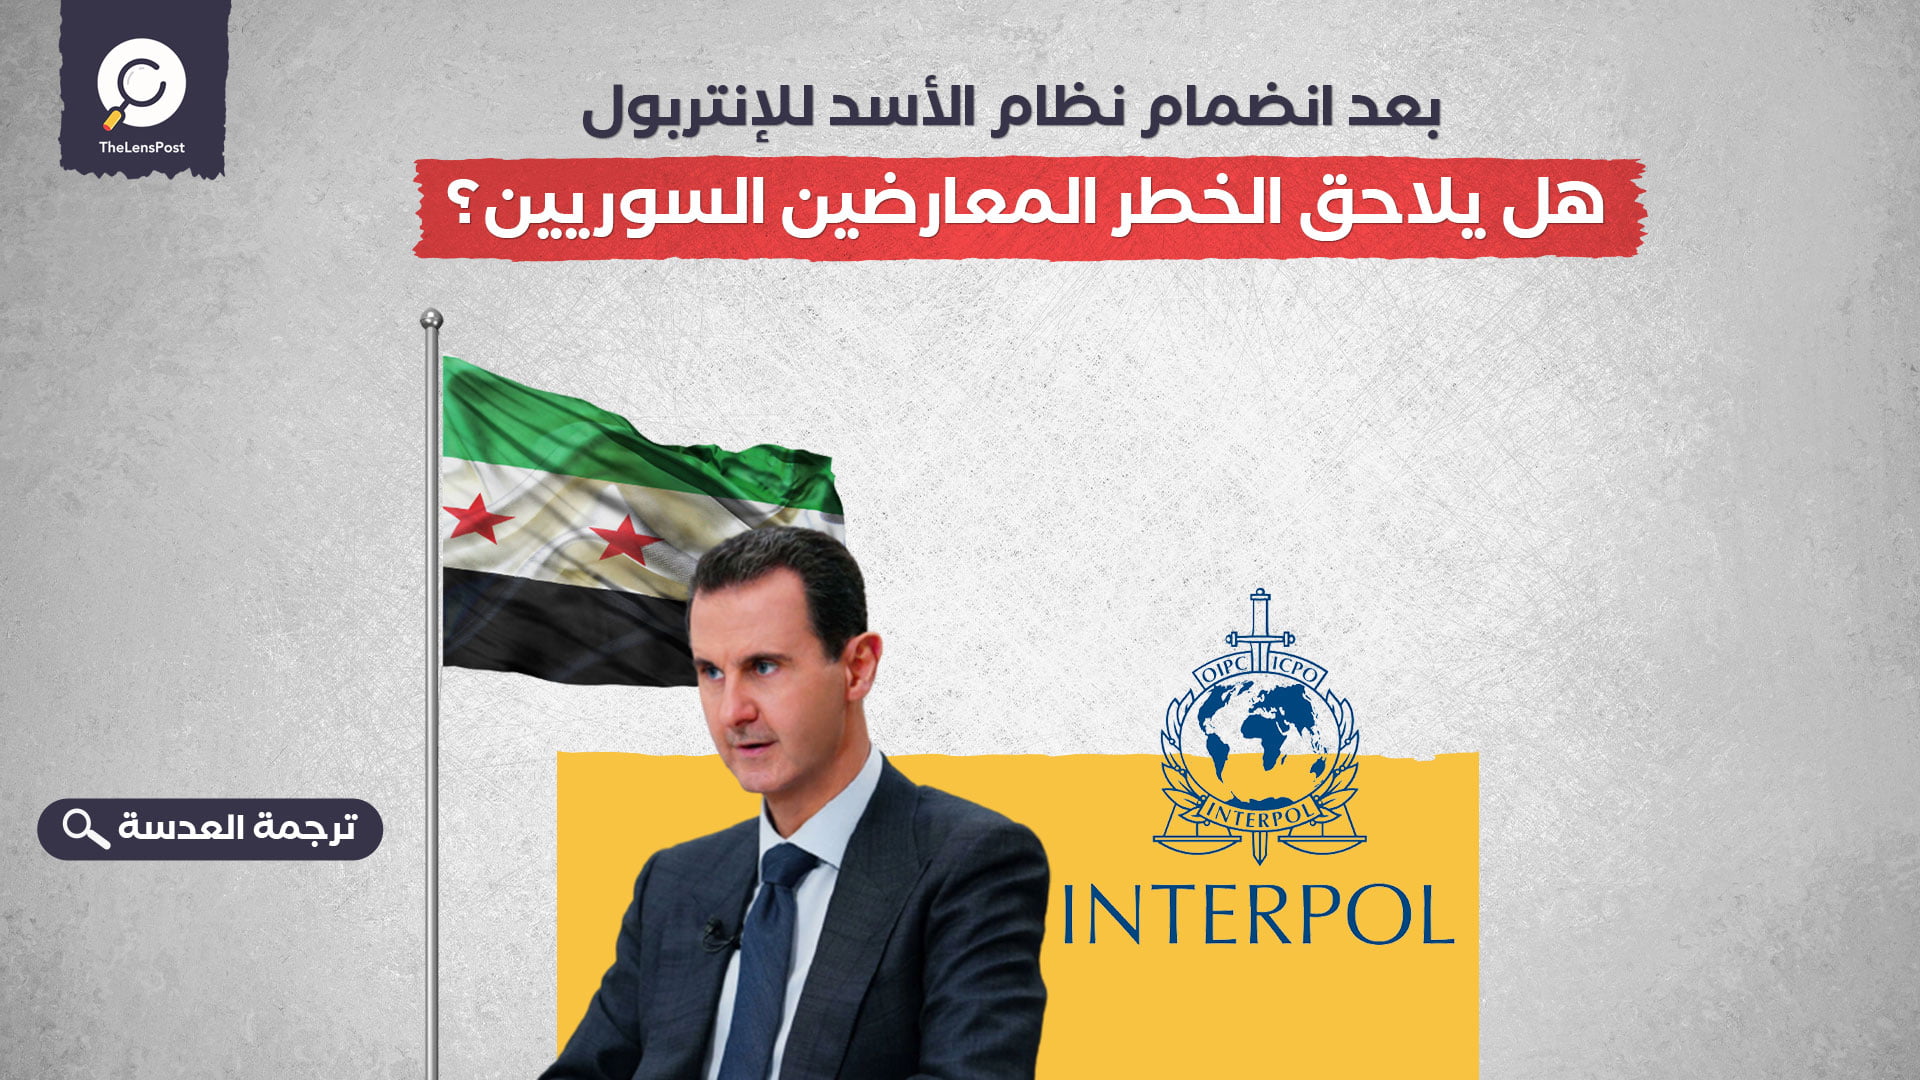 بعد انضمام نظام الأسد للإنتربول… هل يلاحق الخطر المعارضين السوريين؟